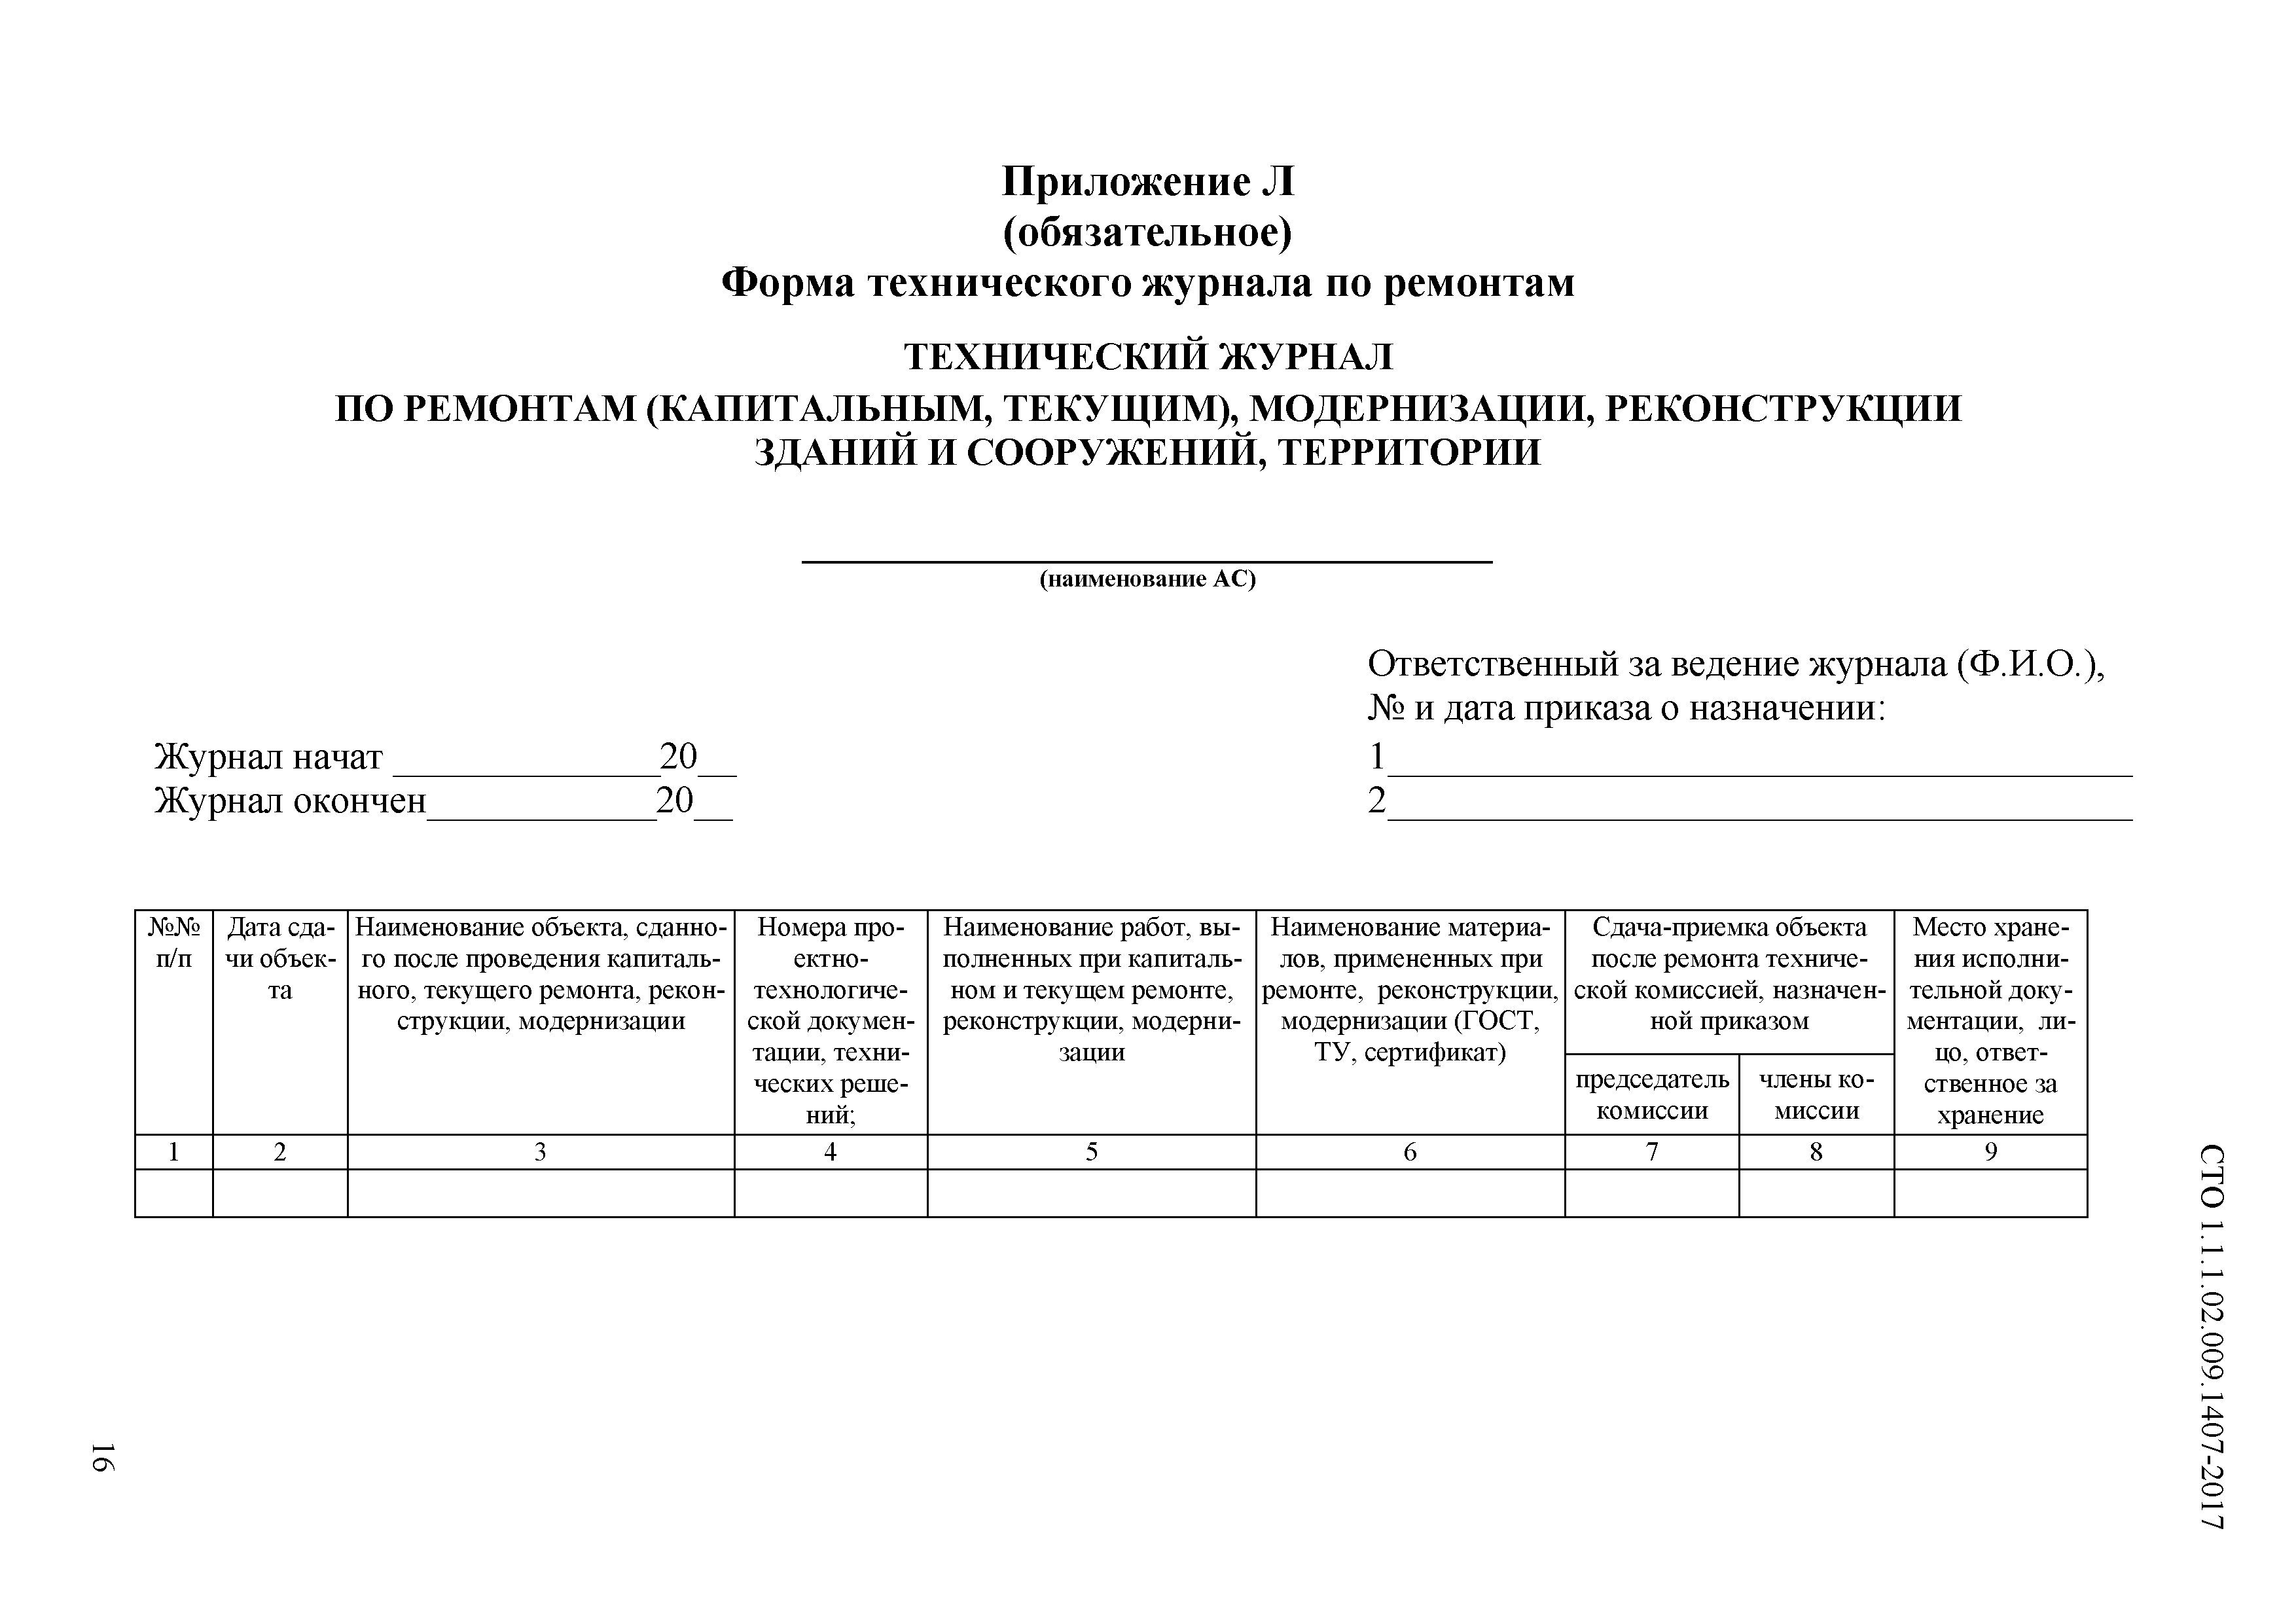 СТО 1.1.1.02.009.1407-2017